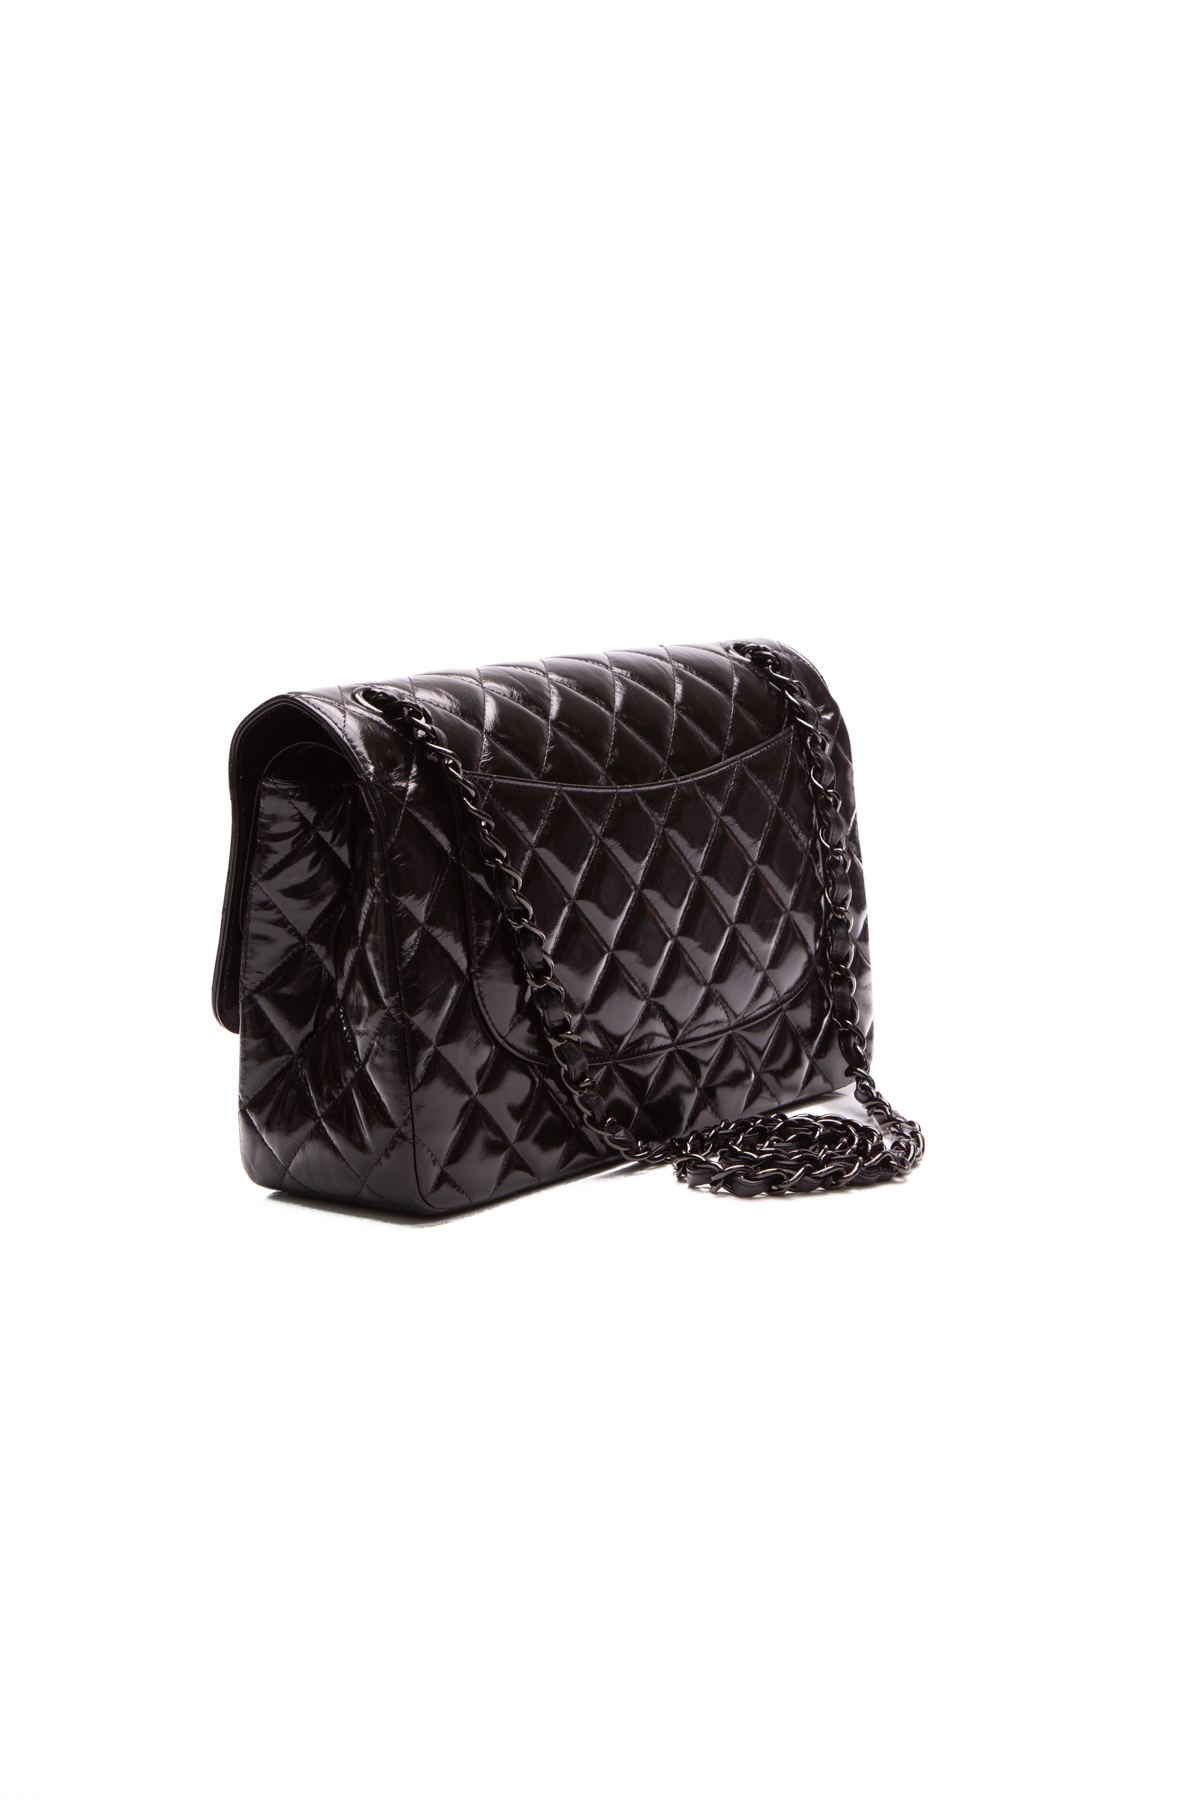 Chanel Caramel Bag - 16 For Sale on 1stDibs